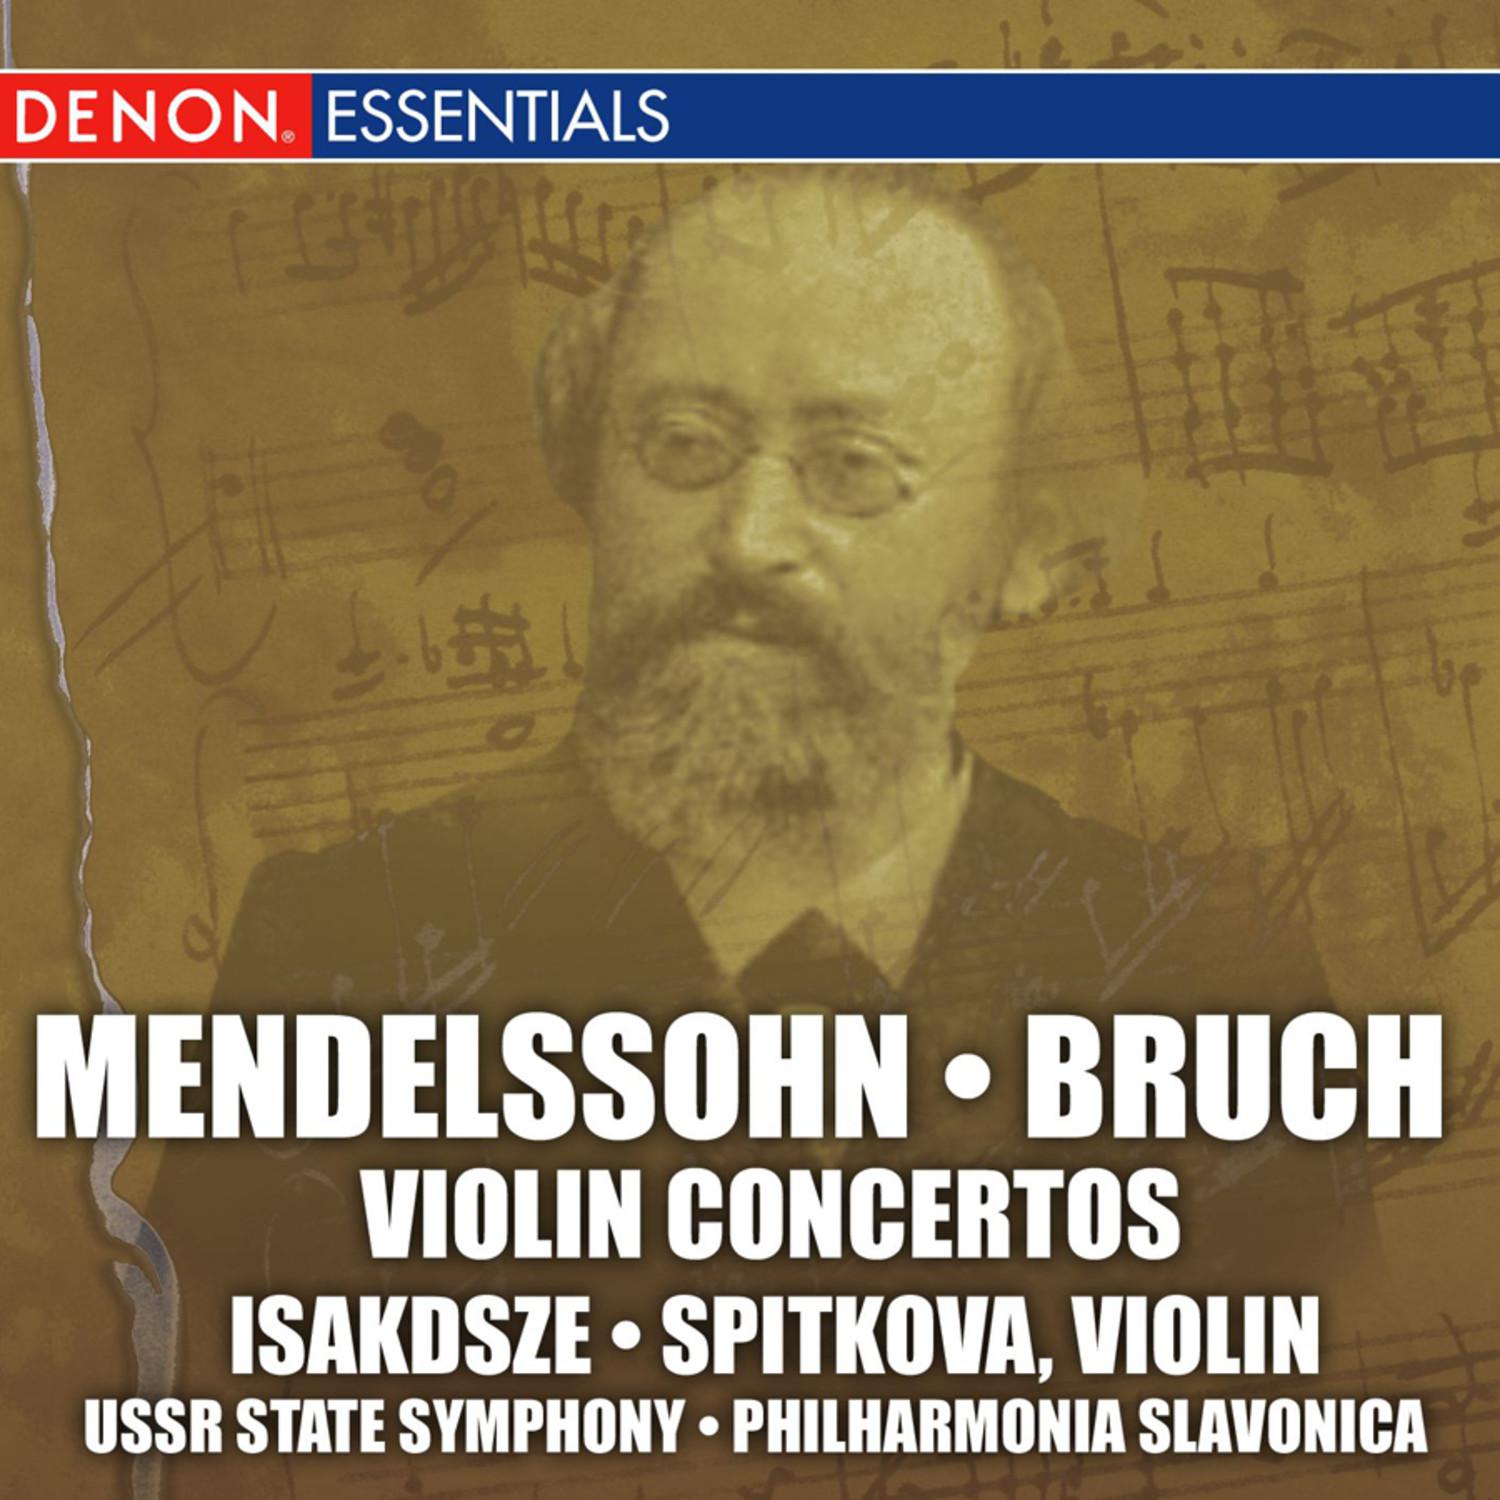 Concerto No. 1 for Violin and Orchestra in G Minor, Op. 26: I. Allegro moderato